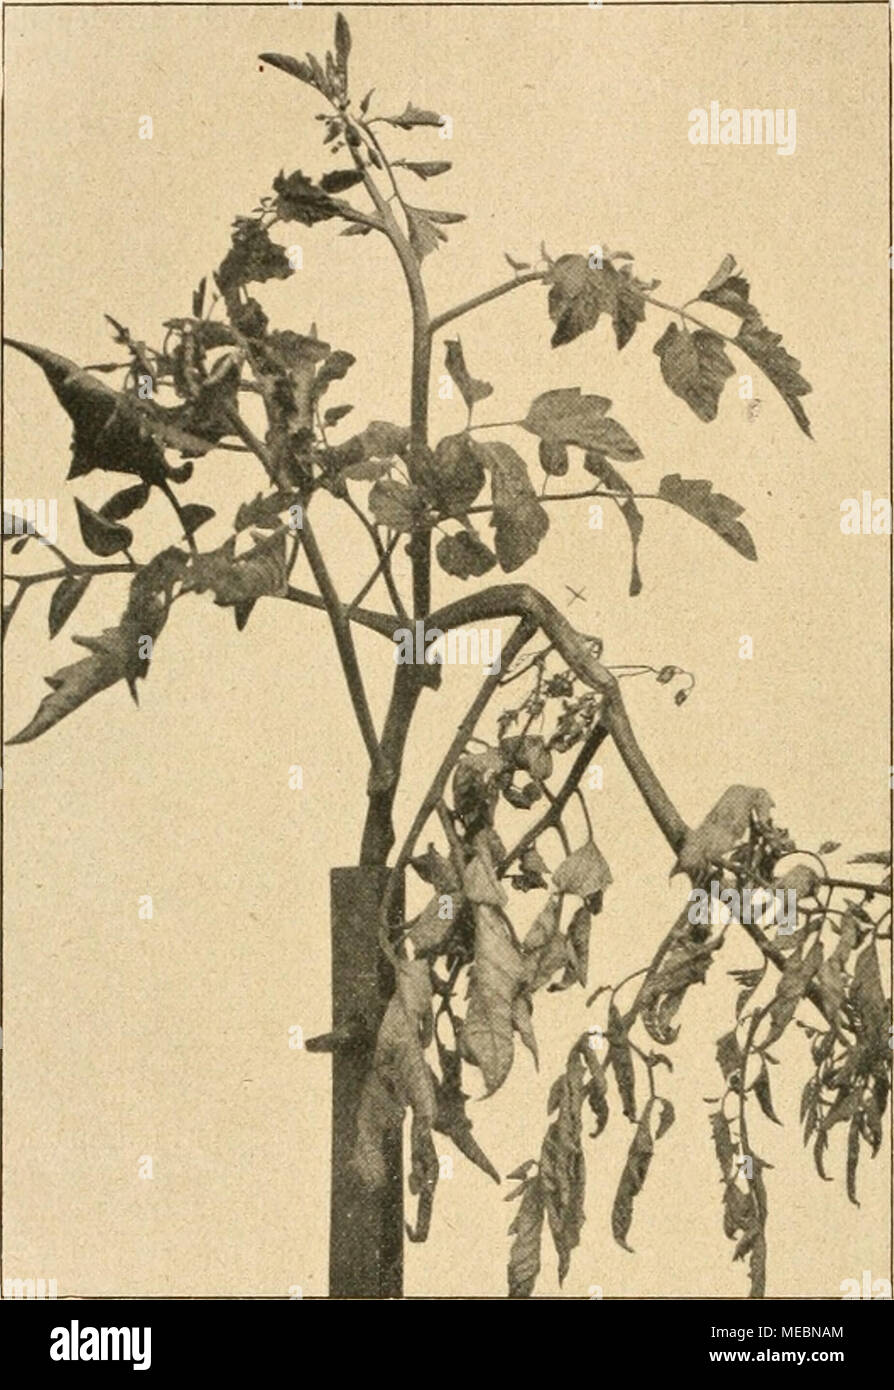 Die Gartenwelt . Bild 1. Von Sclerotinia Libertiana befallener Seitenzweig  einer Tomatenpflanze. Bei X Ausgangsstelle der Erkrankung. lieh selten  aufgetreten. In den von 1891 ab bis 1912 für Deutsch- land erschienenen